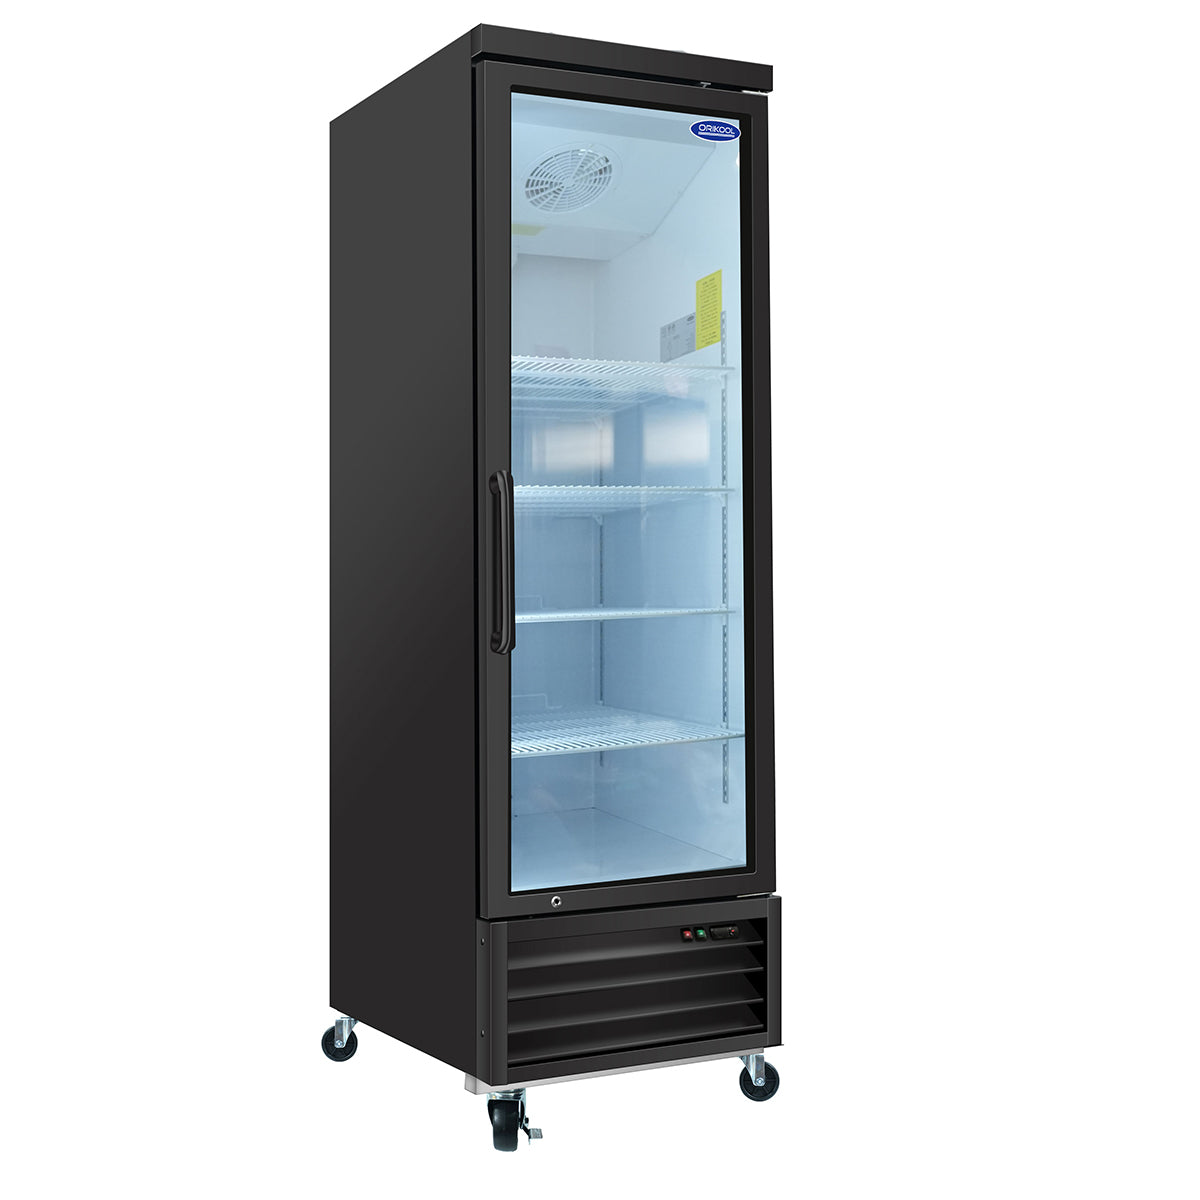 ORIKOOL SD690FT 27" Single Swing Glass Door Merchandiser Freezer 19.2 cu.ft. Commercial Freezer, Black